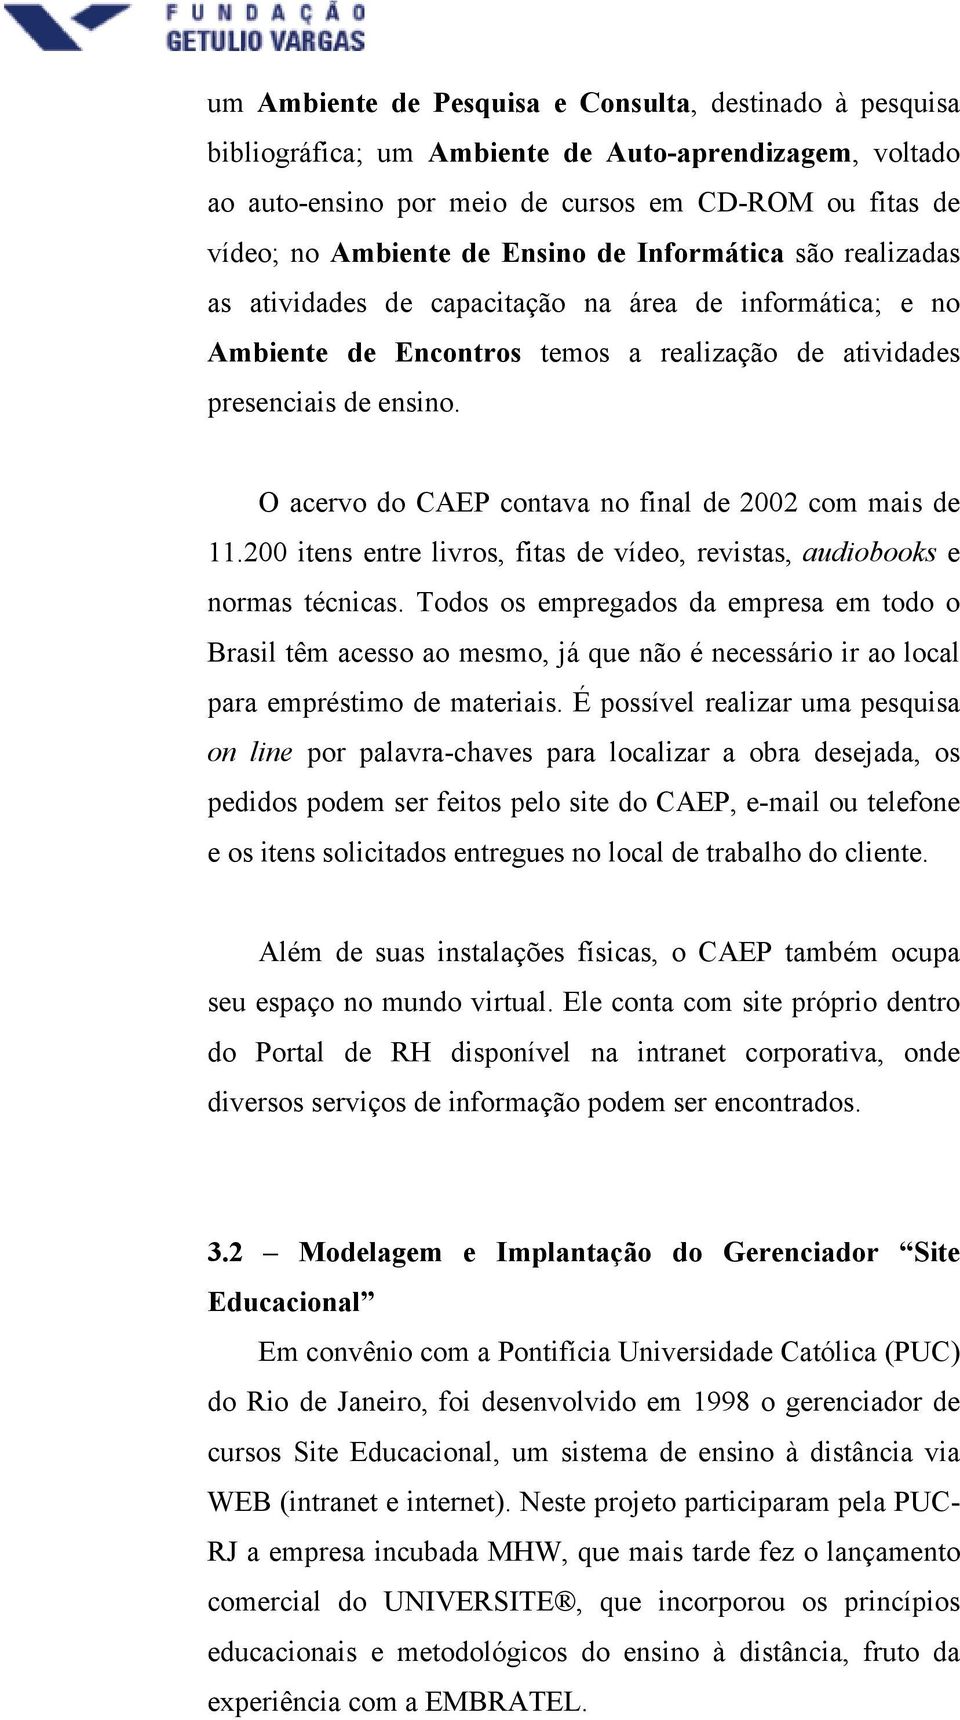 O acervo do CAEP contava no final de 2002 com mais de 11.200 itens entre livros, fitas de vídeo, revistas, audiobooks e normas técnicas.